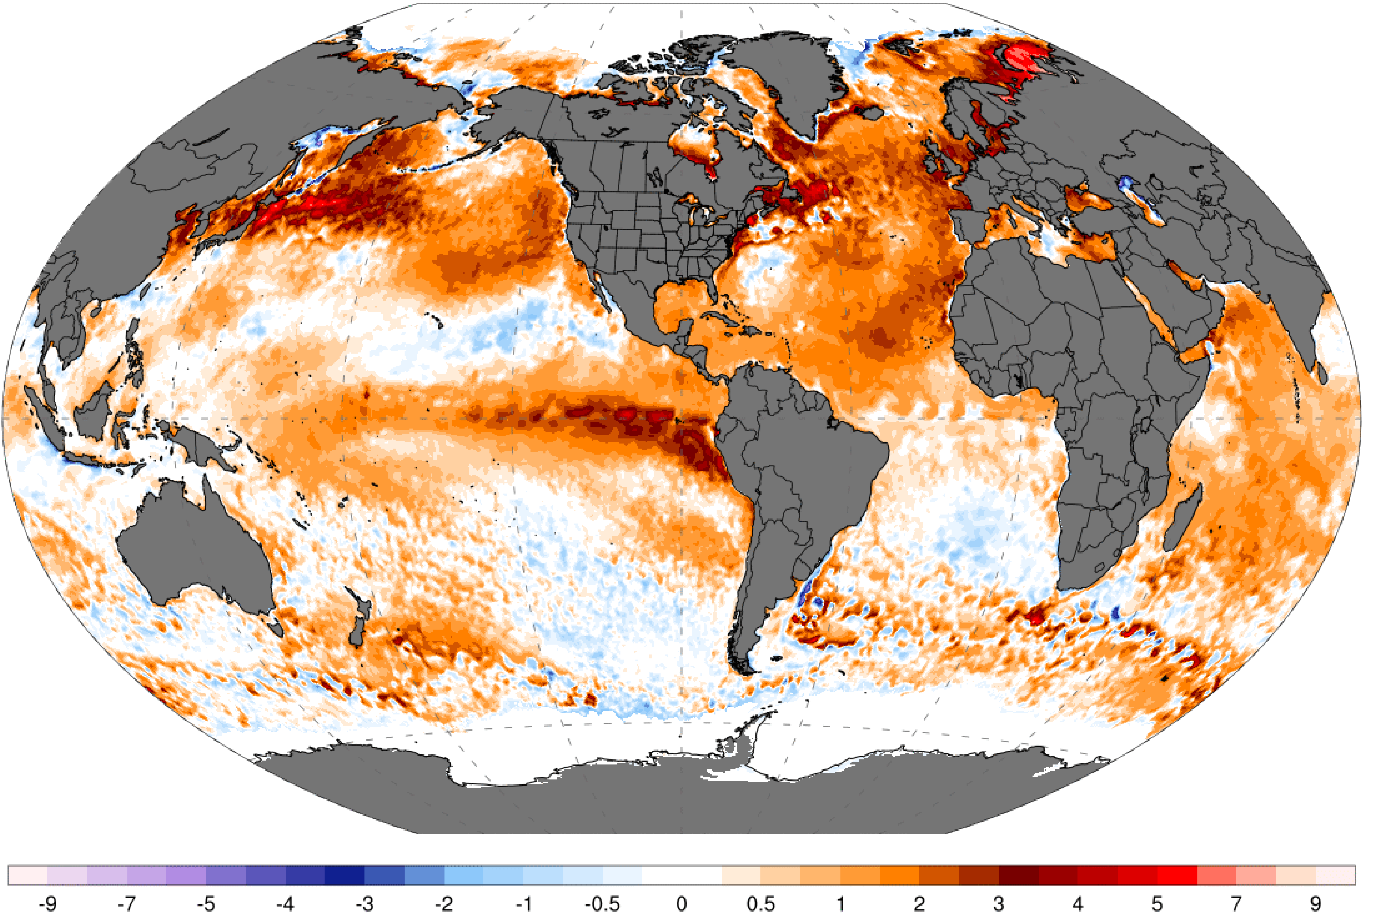 Vergr?sserte Ansicht: Weltkarte, die die unterschiedlichen Oberflächentemperaturen der Meere zeigt.